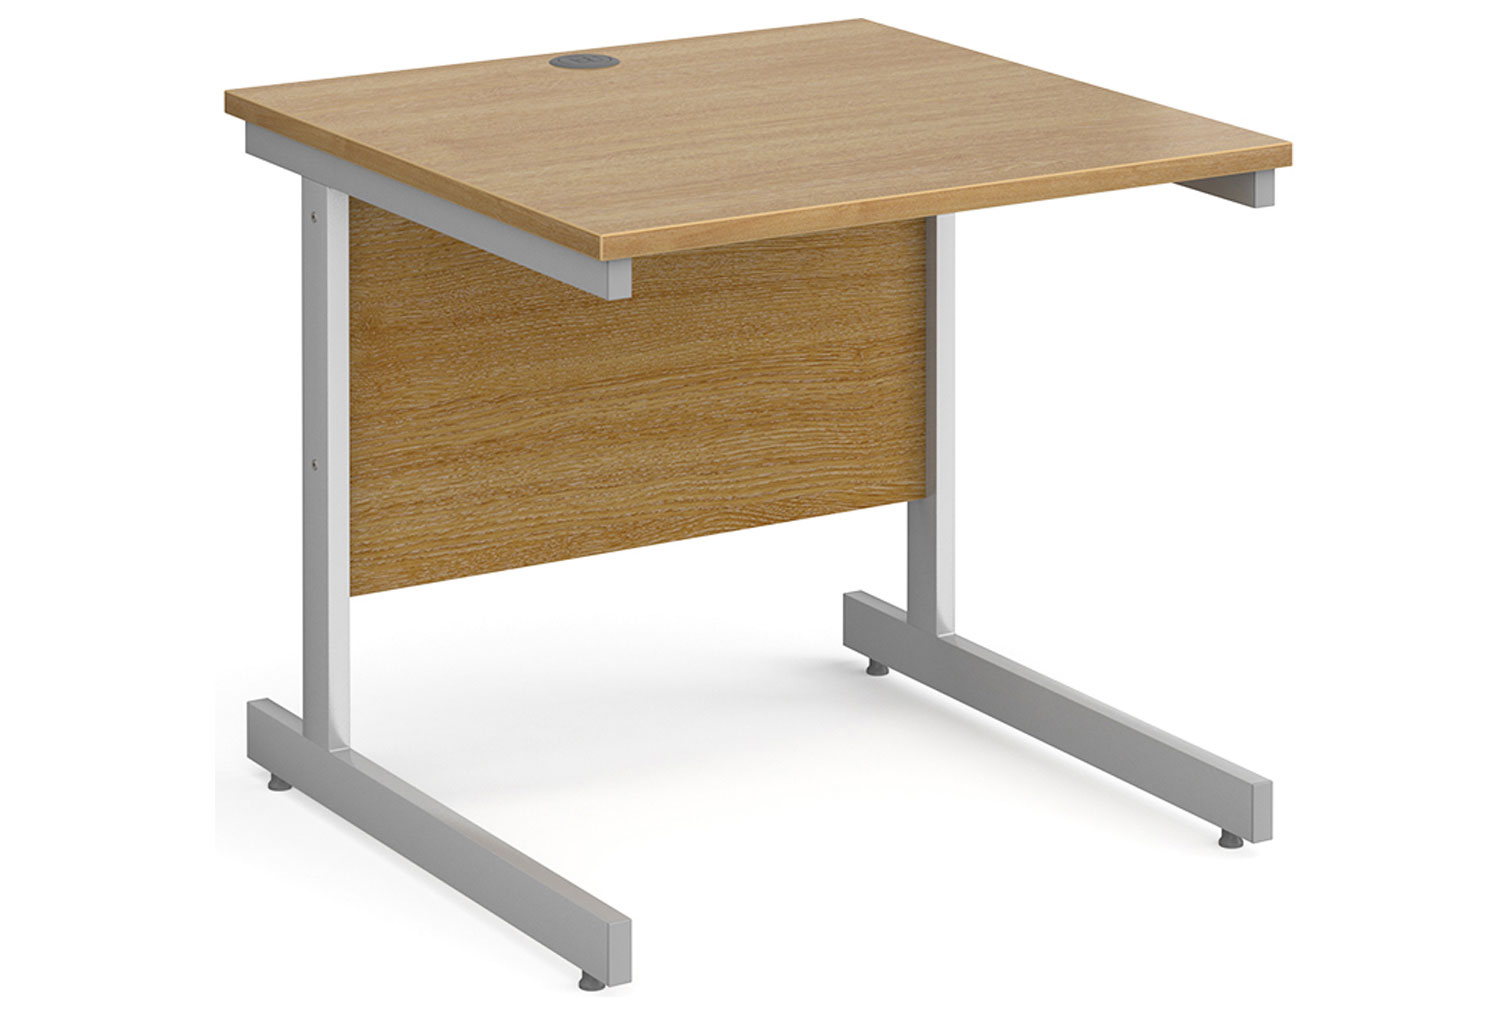 Tully I Rectangular Office Desk, 80wx80dx73h (cm), Oak